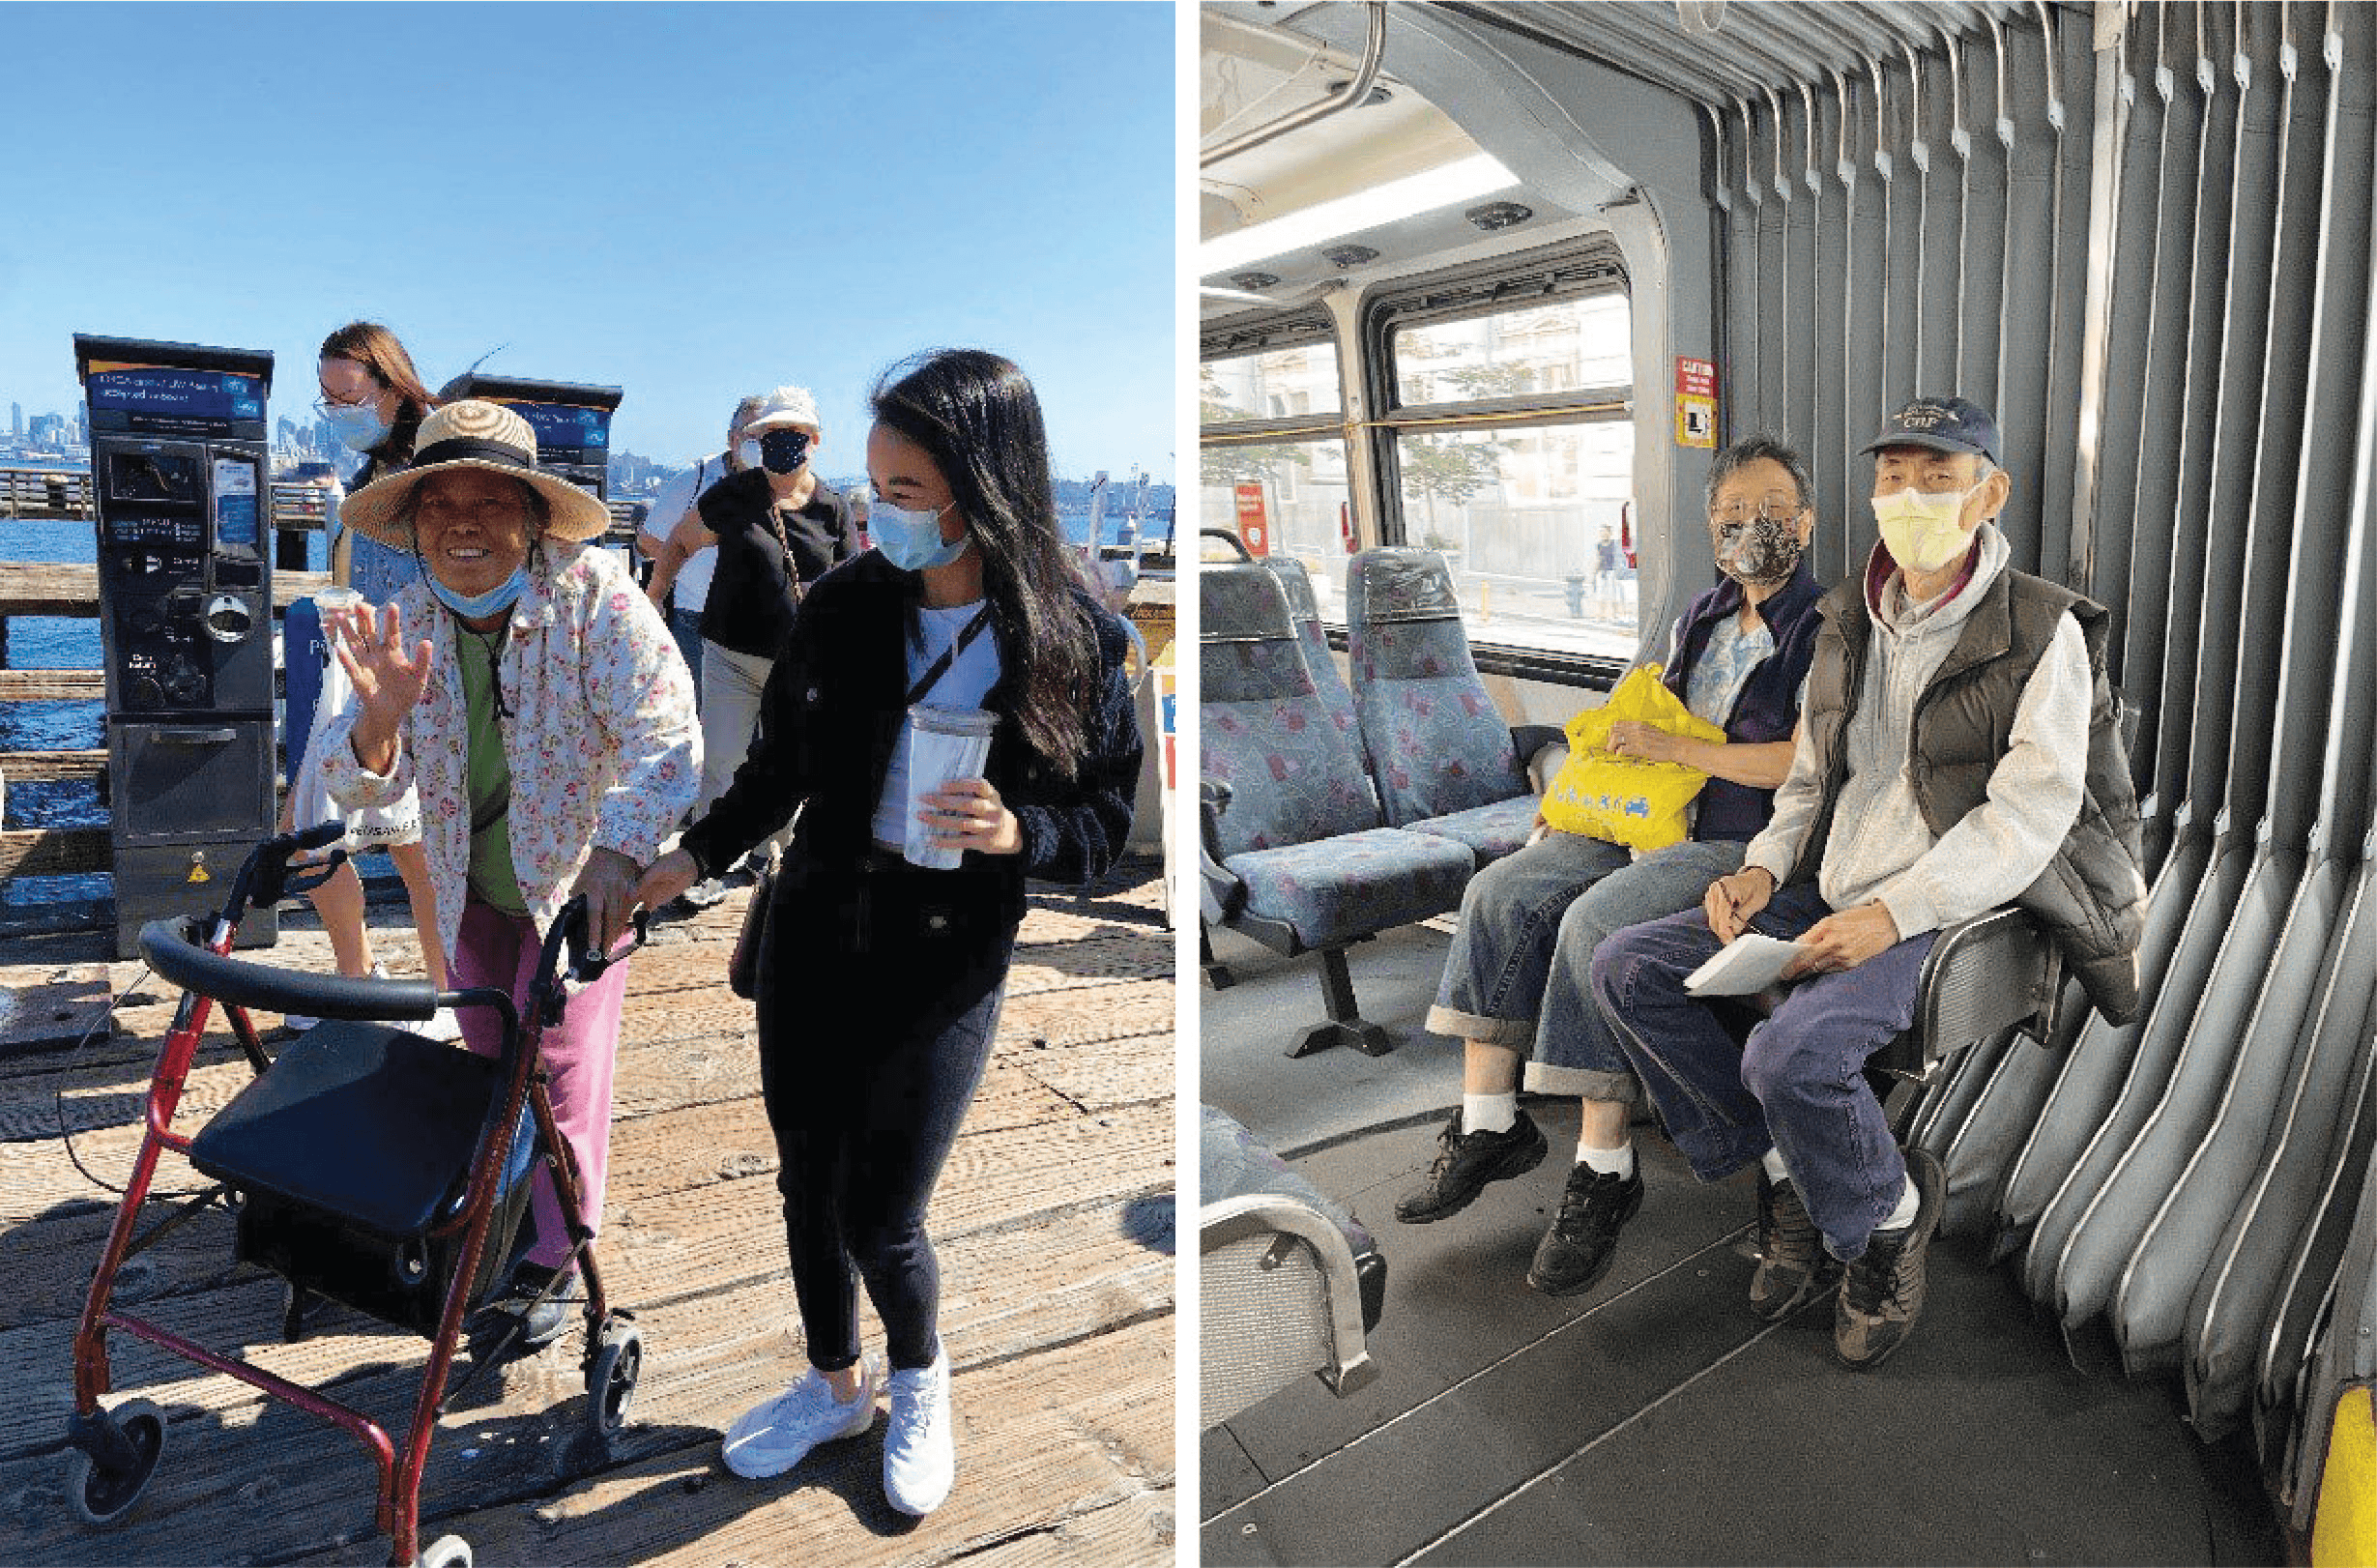 Các thành viên cộng đồng ở Seattle tận hưởng một ngày nắng đẹp trong khu phố Alki của West Seattle (trái) và đi xe buýt (phải) trong chuyến đi tham quan của họ vào năm 2021. Nguồn hình ảnh: SDOT